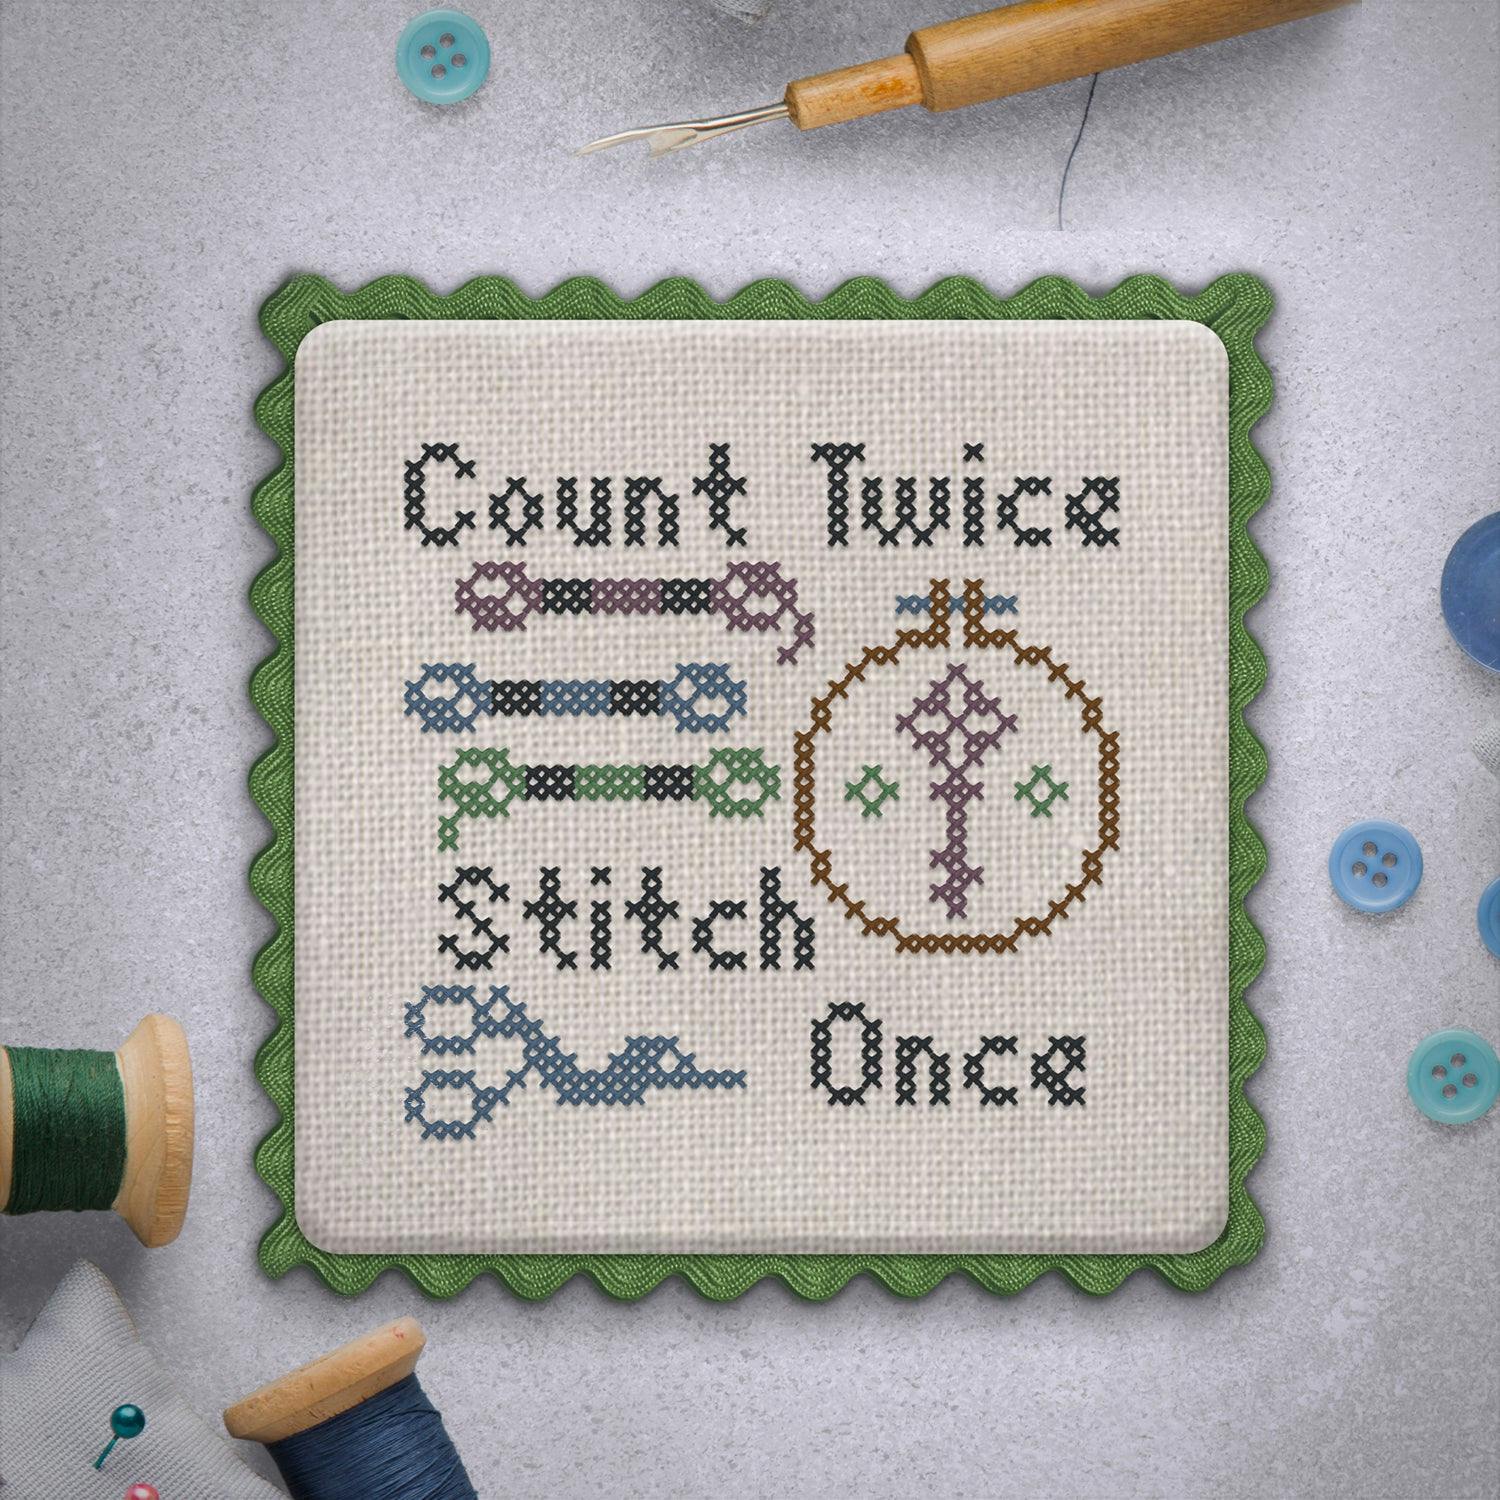 Stitching Cross Stitch Patterns